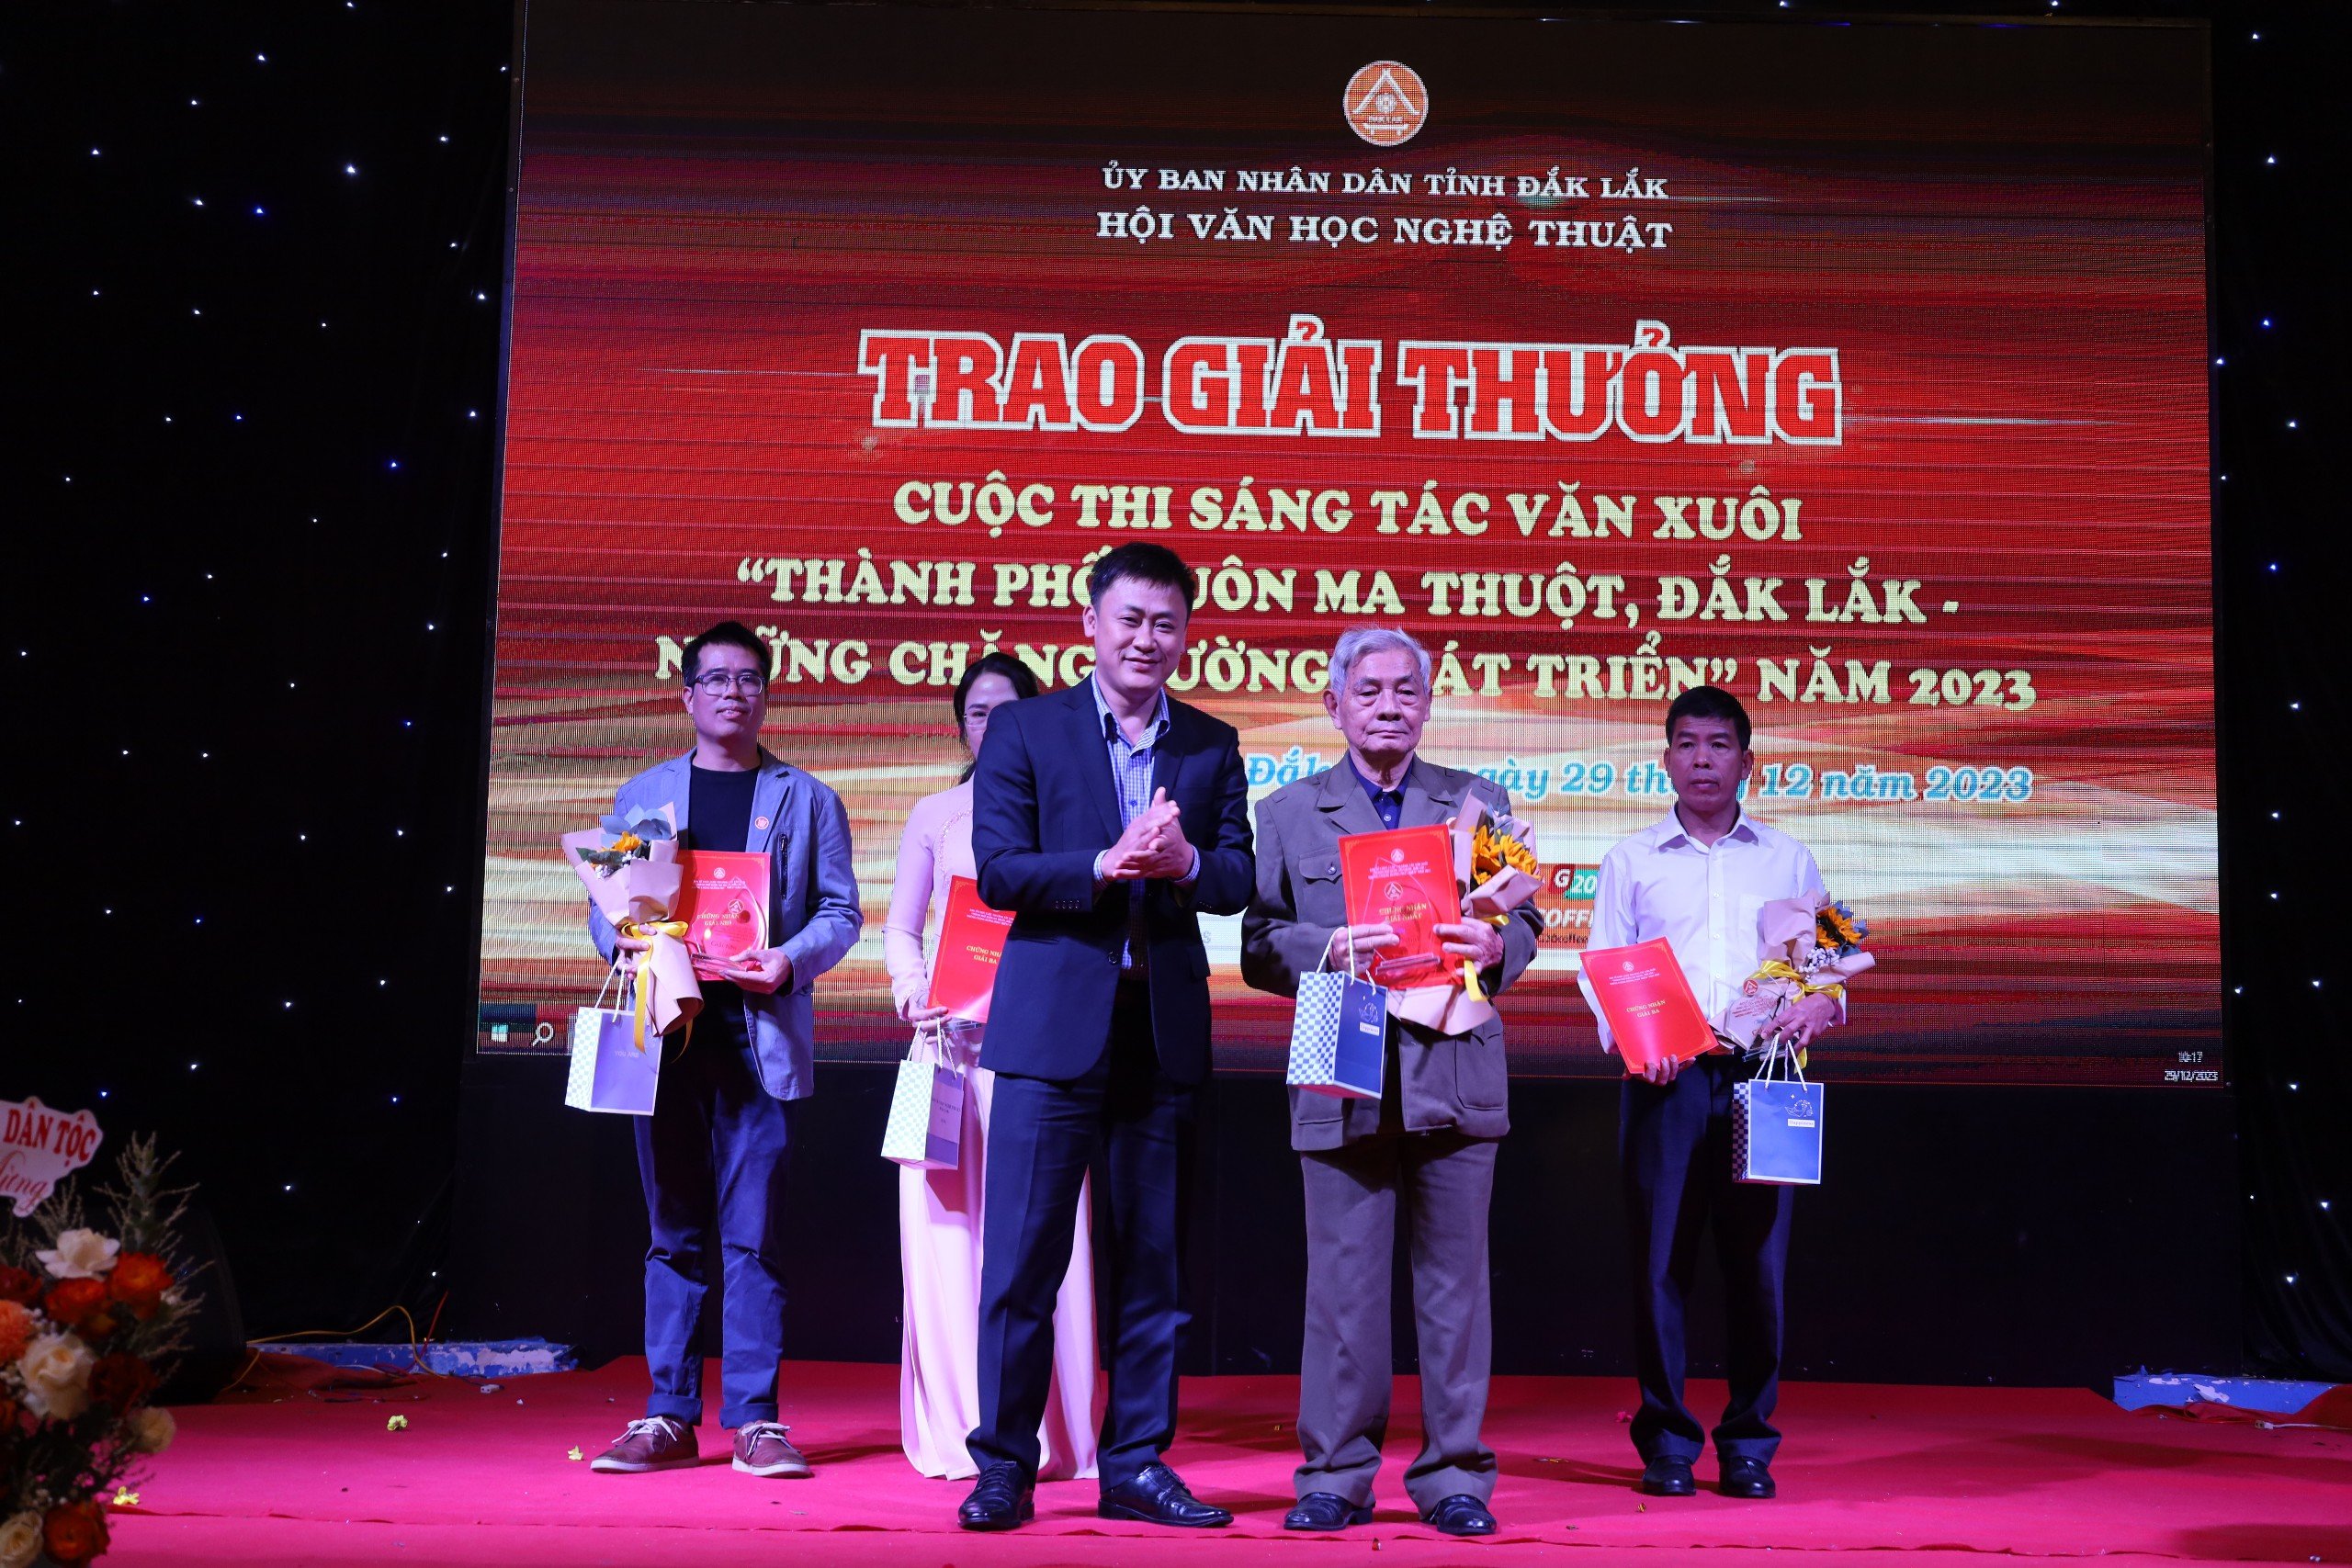 Hội Văn học Nghệ thuật tỉnh Đắk Lắk tổng kết và trao giải thưởng văn học nghệ thuật năm 2023